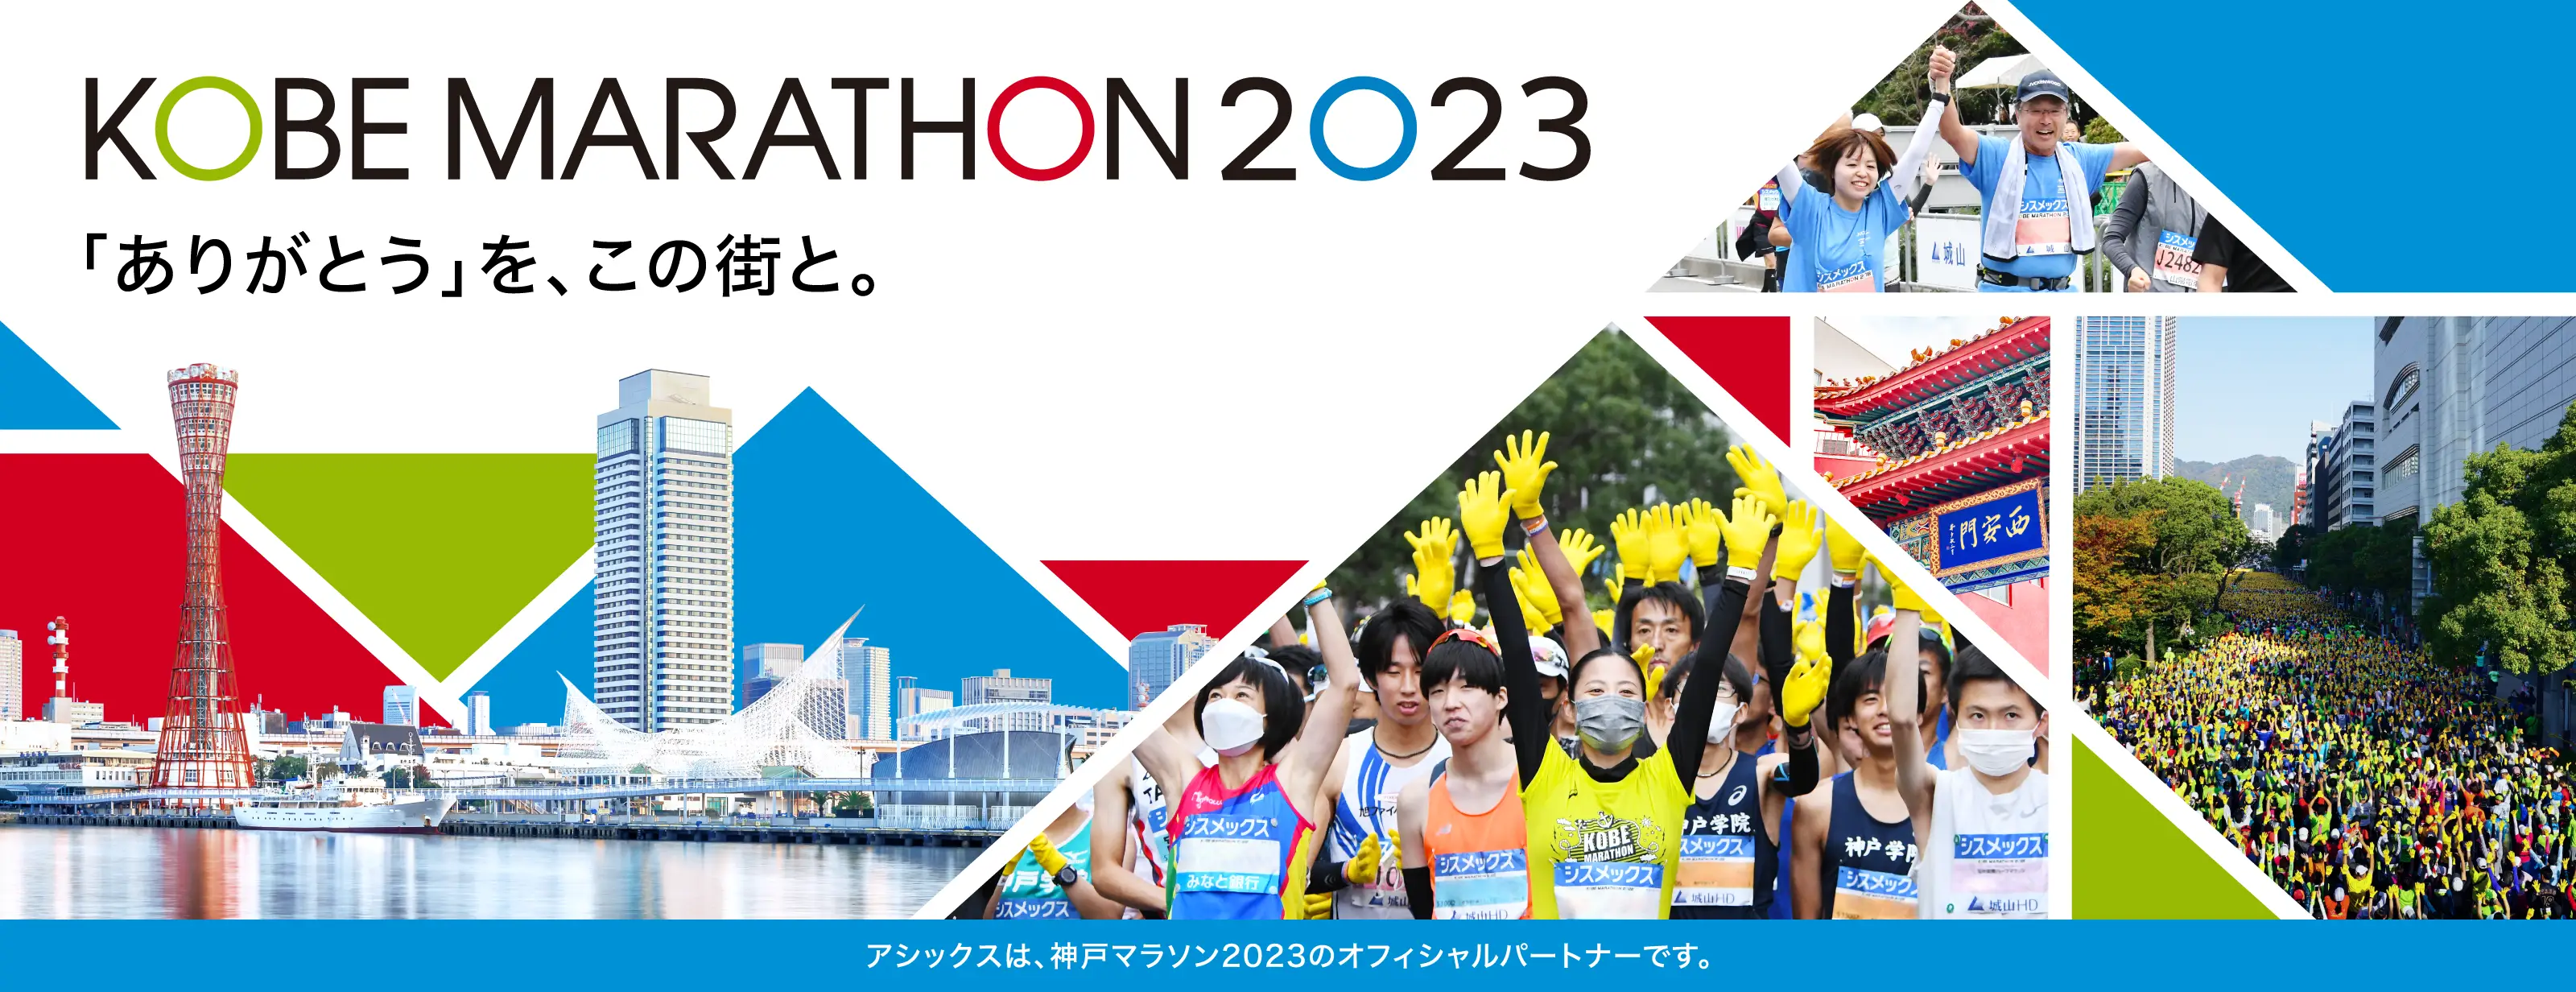 神戸マラソン2023 KV